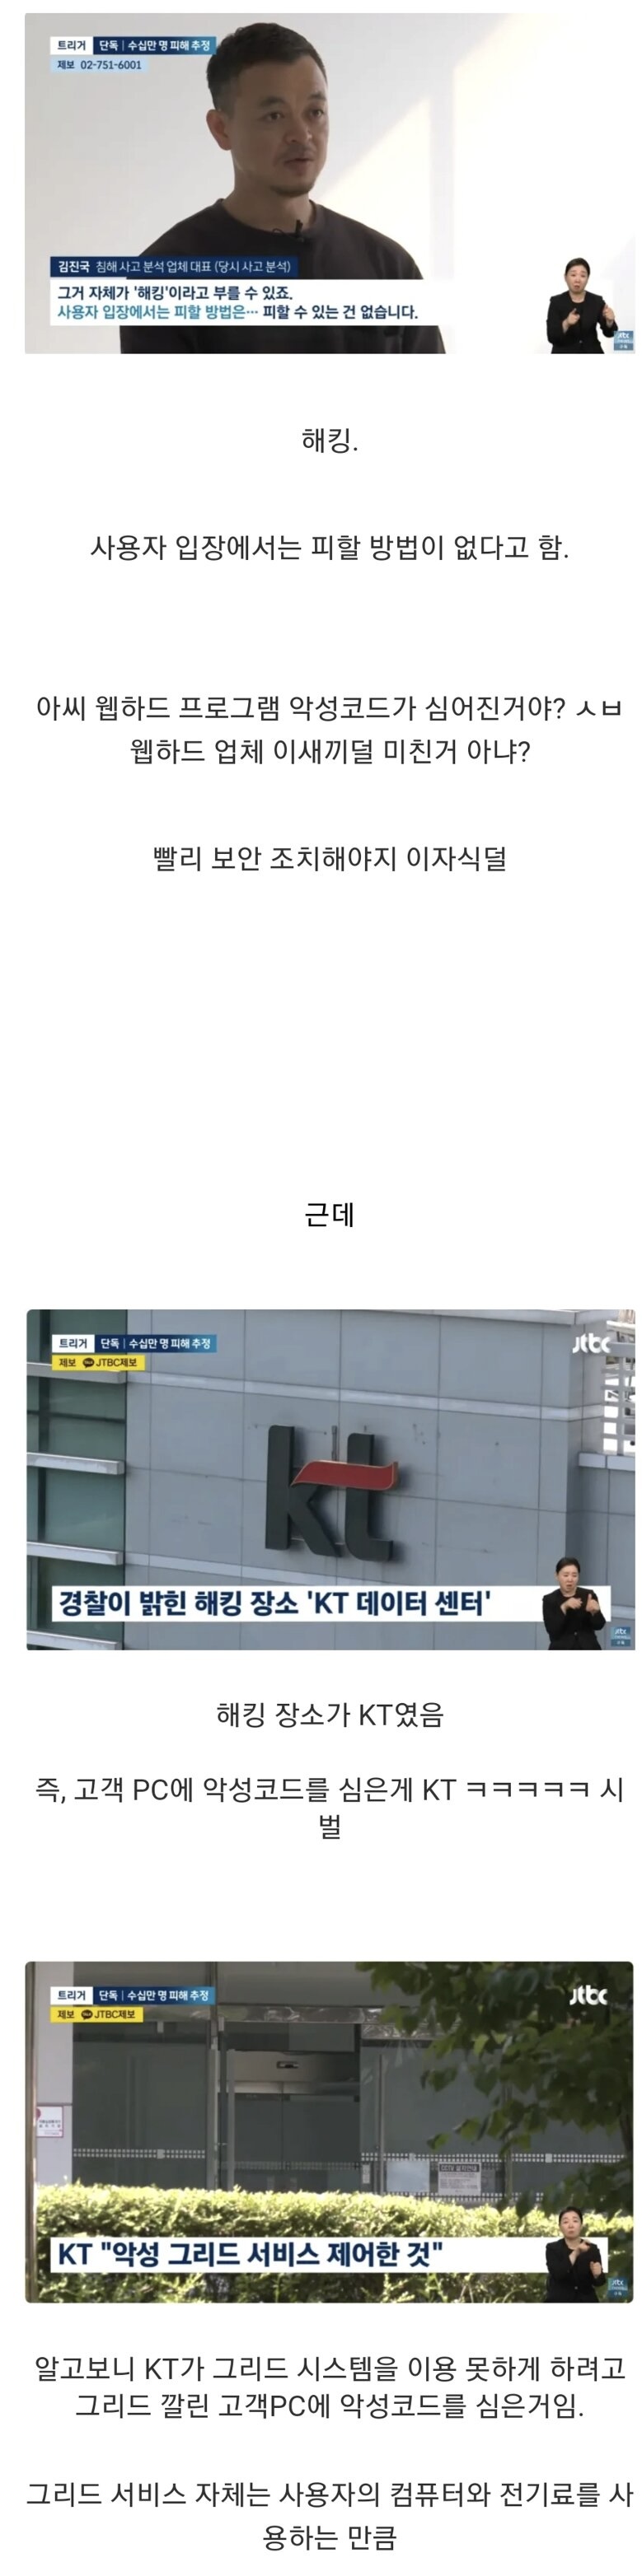 싱글벙글 K-망사용료 근황 feat. 위성 팔아먹은 회사 KT